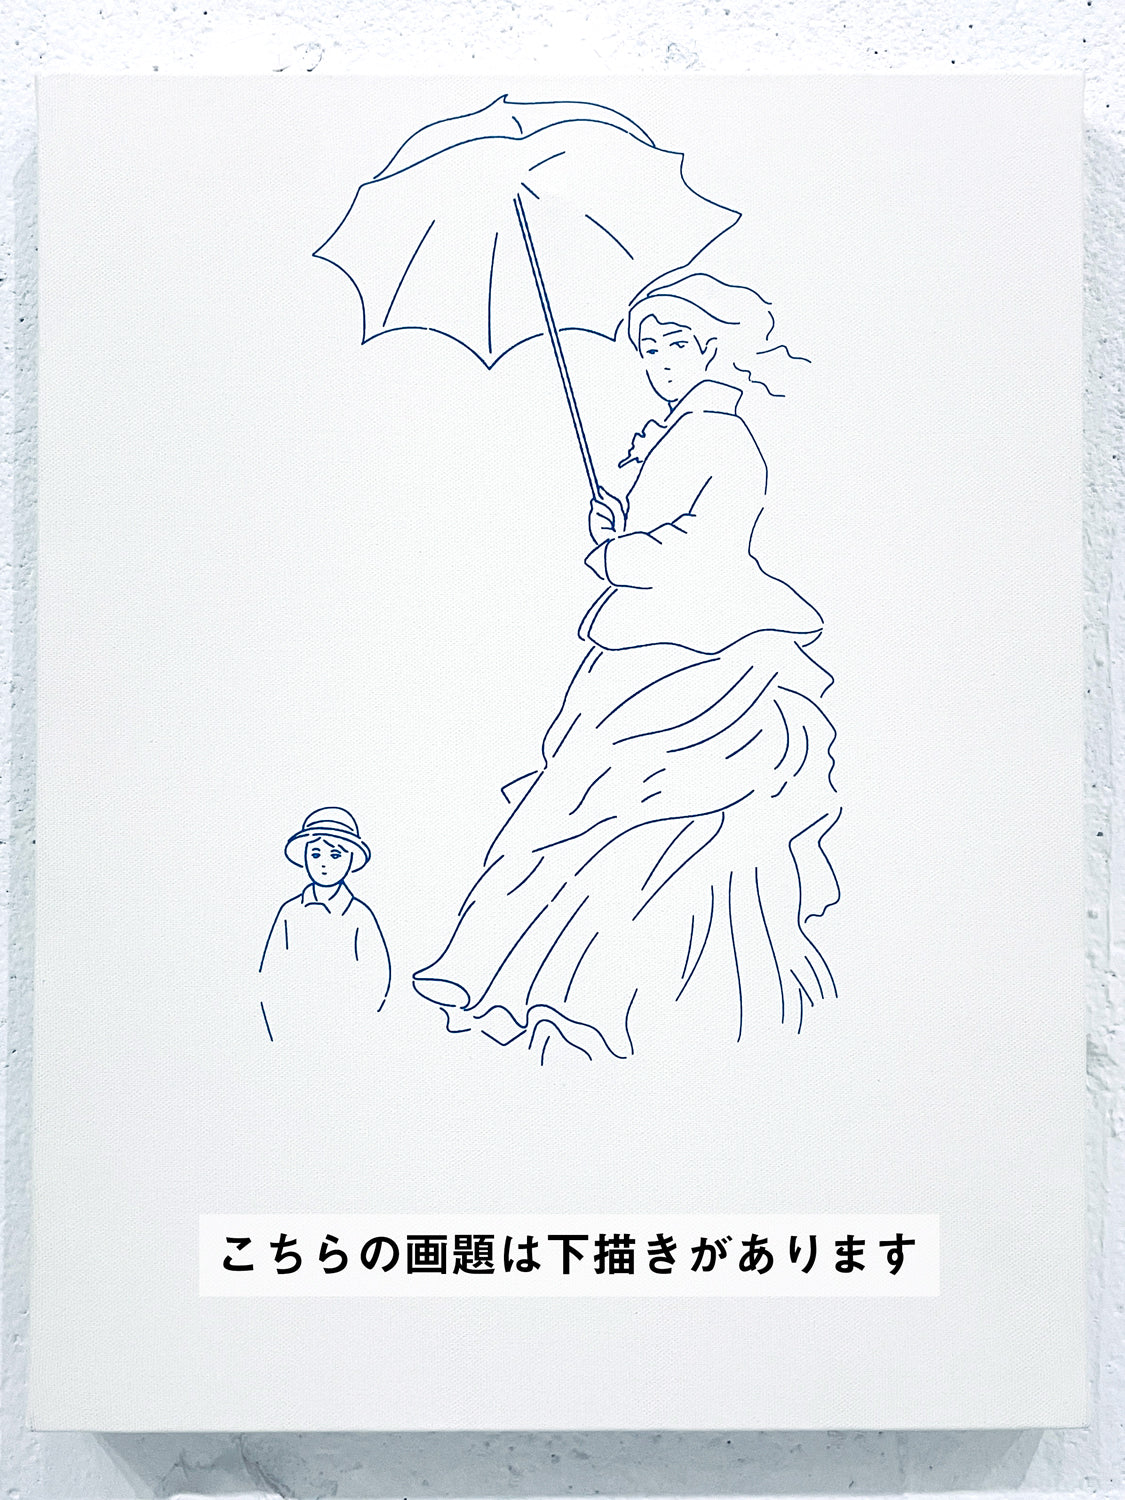 【上野/根津】3月22日 (金) 19:00-22:00 | クロード・モネ | 散歩、日傘をさす女性 *下描きあり (Woman with a Parasol by Claude Monet *canvas drafted at Ueno/Nezu)